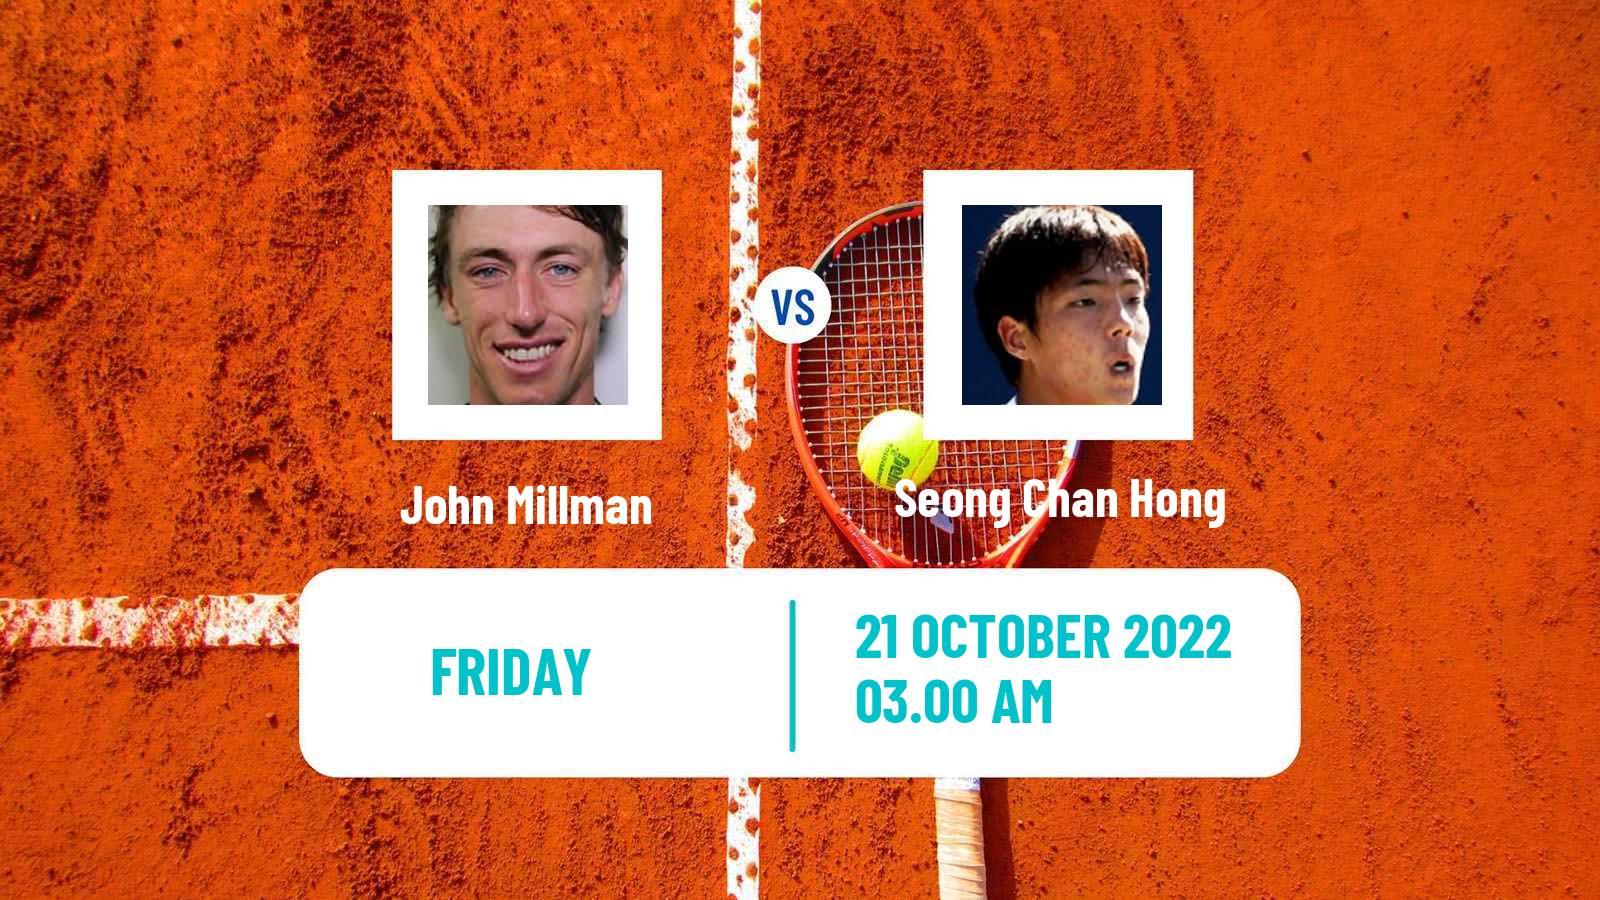 Tennis ATP Challenger John Millman - Seong Chan Hong